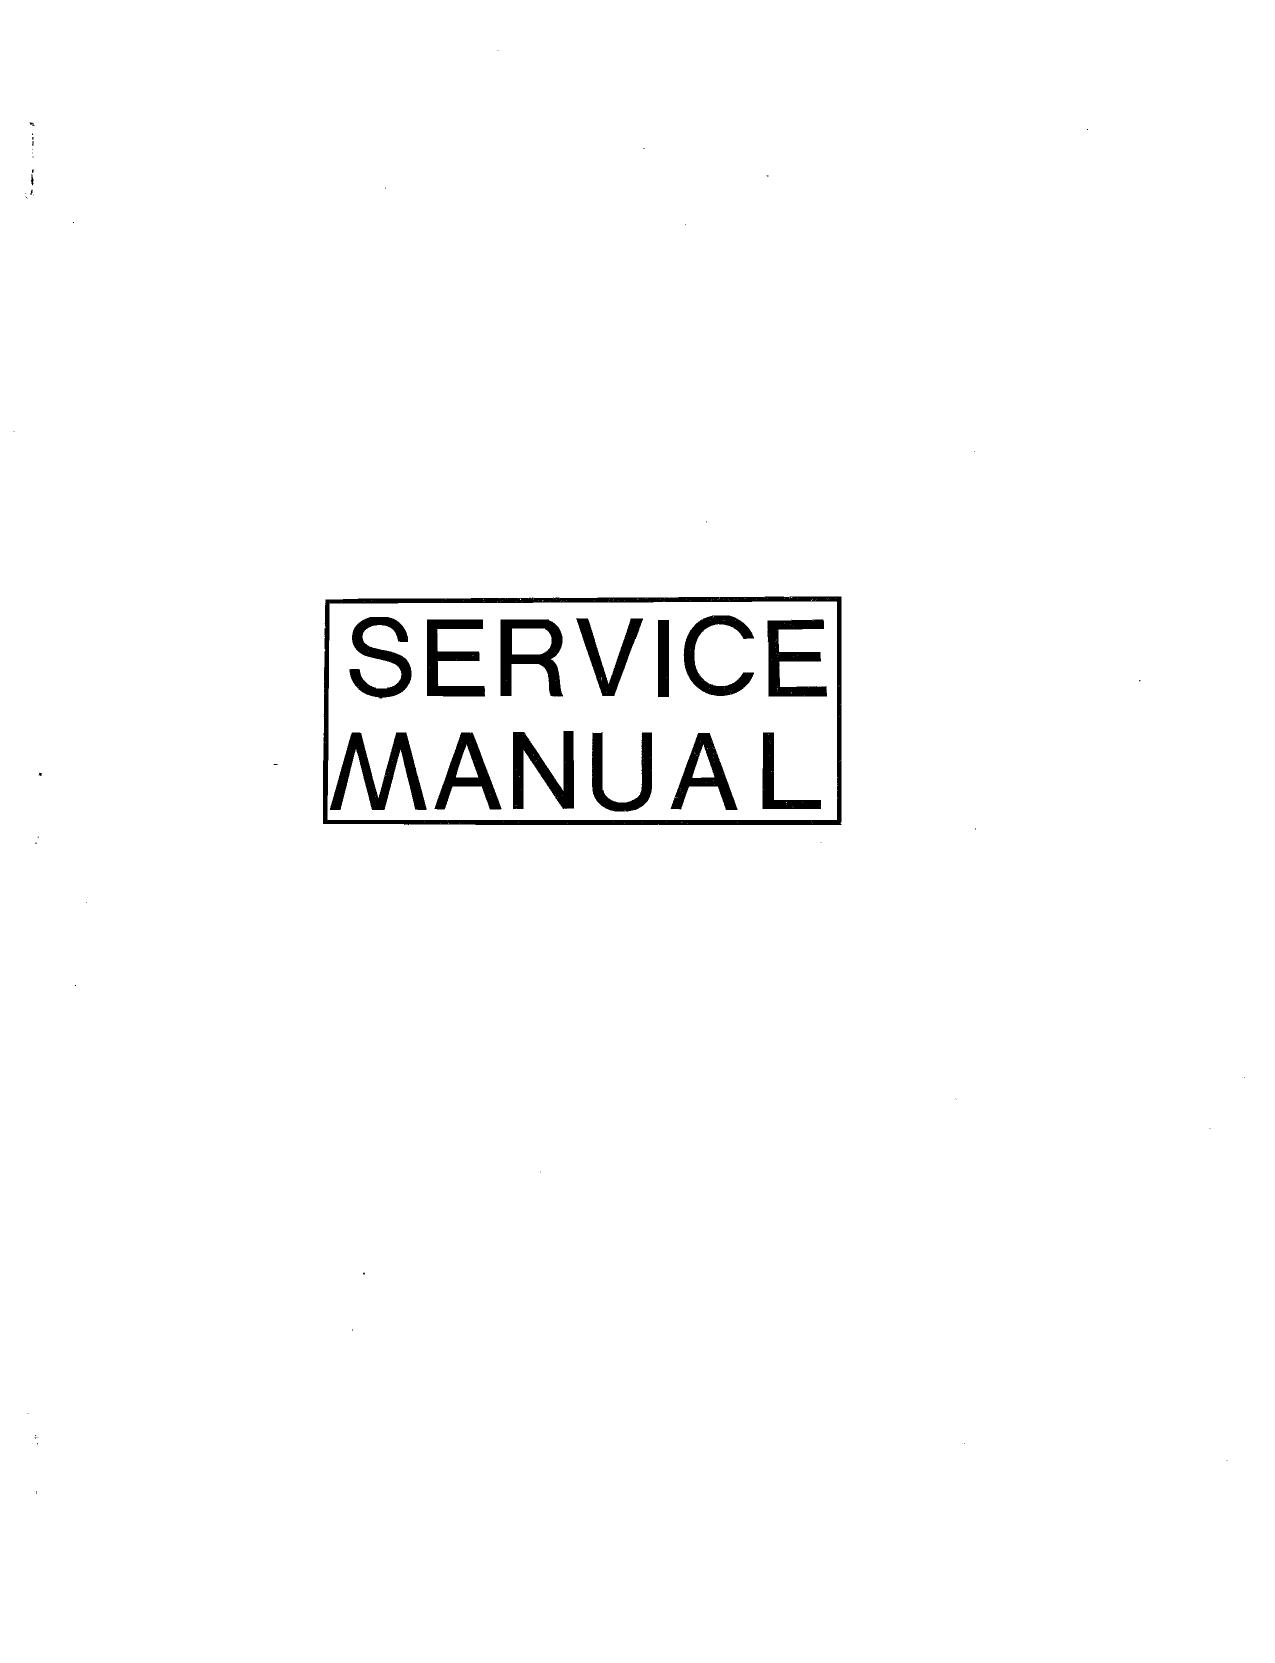 Knockout Service Manual